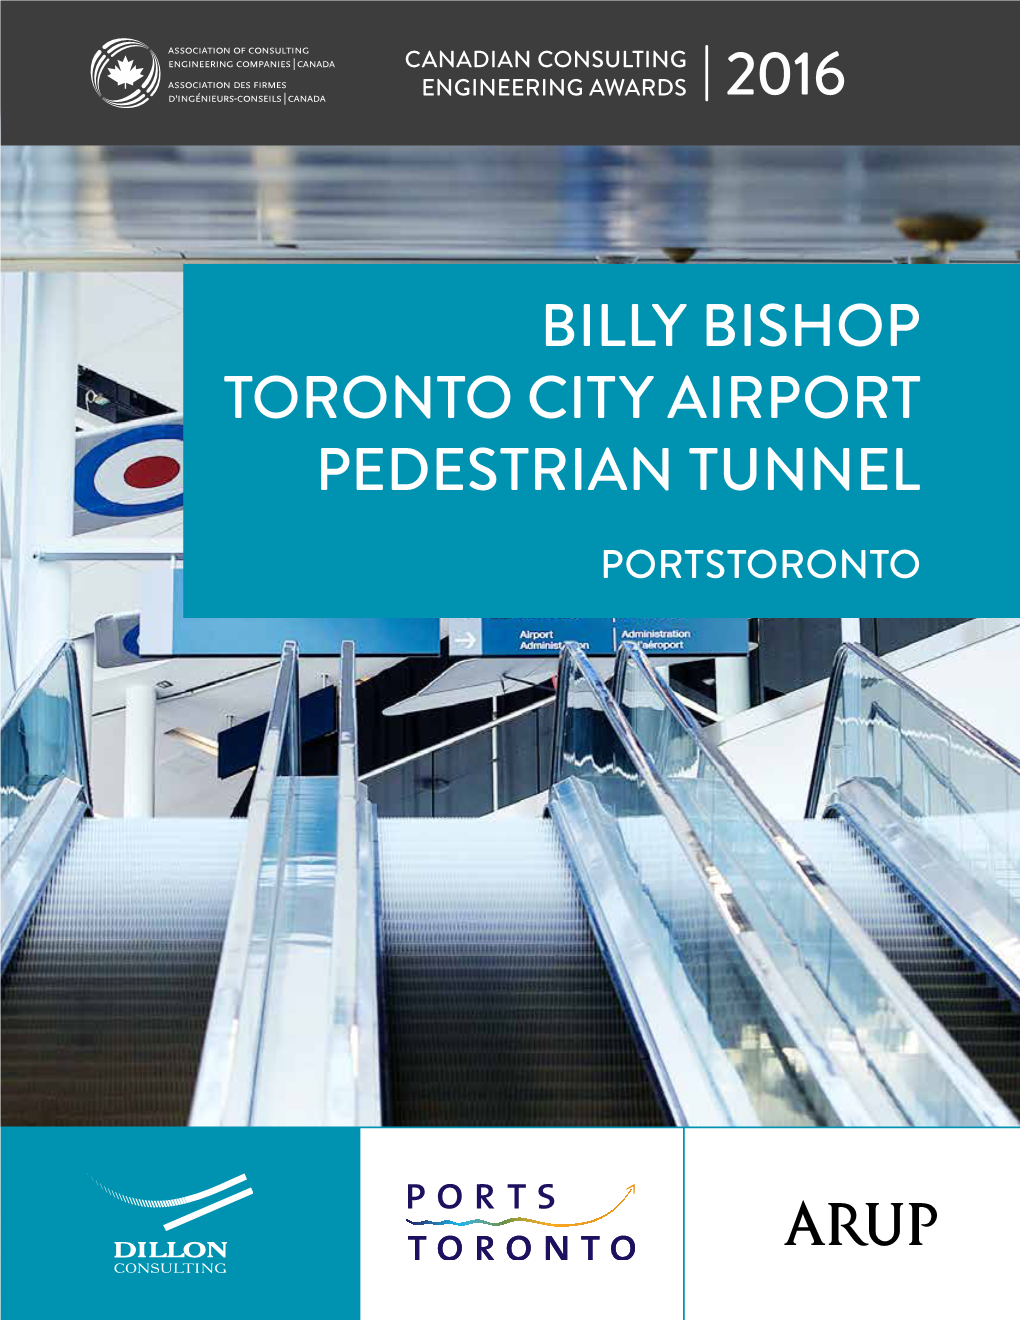 Billy Bishop Toronto City Airport Pedestrian Tunnel